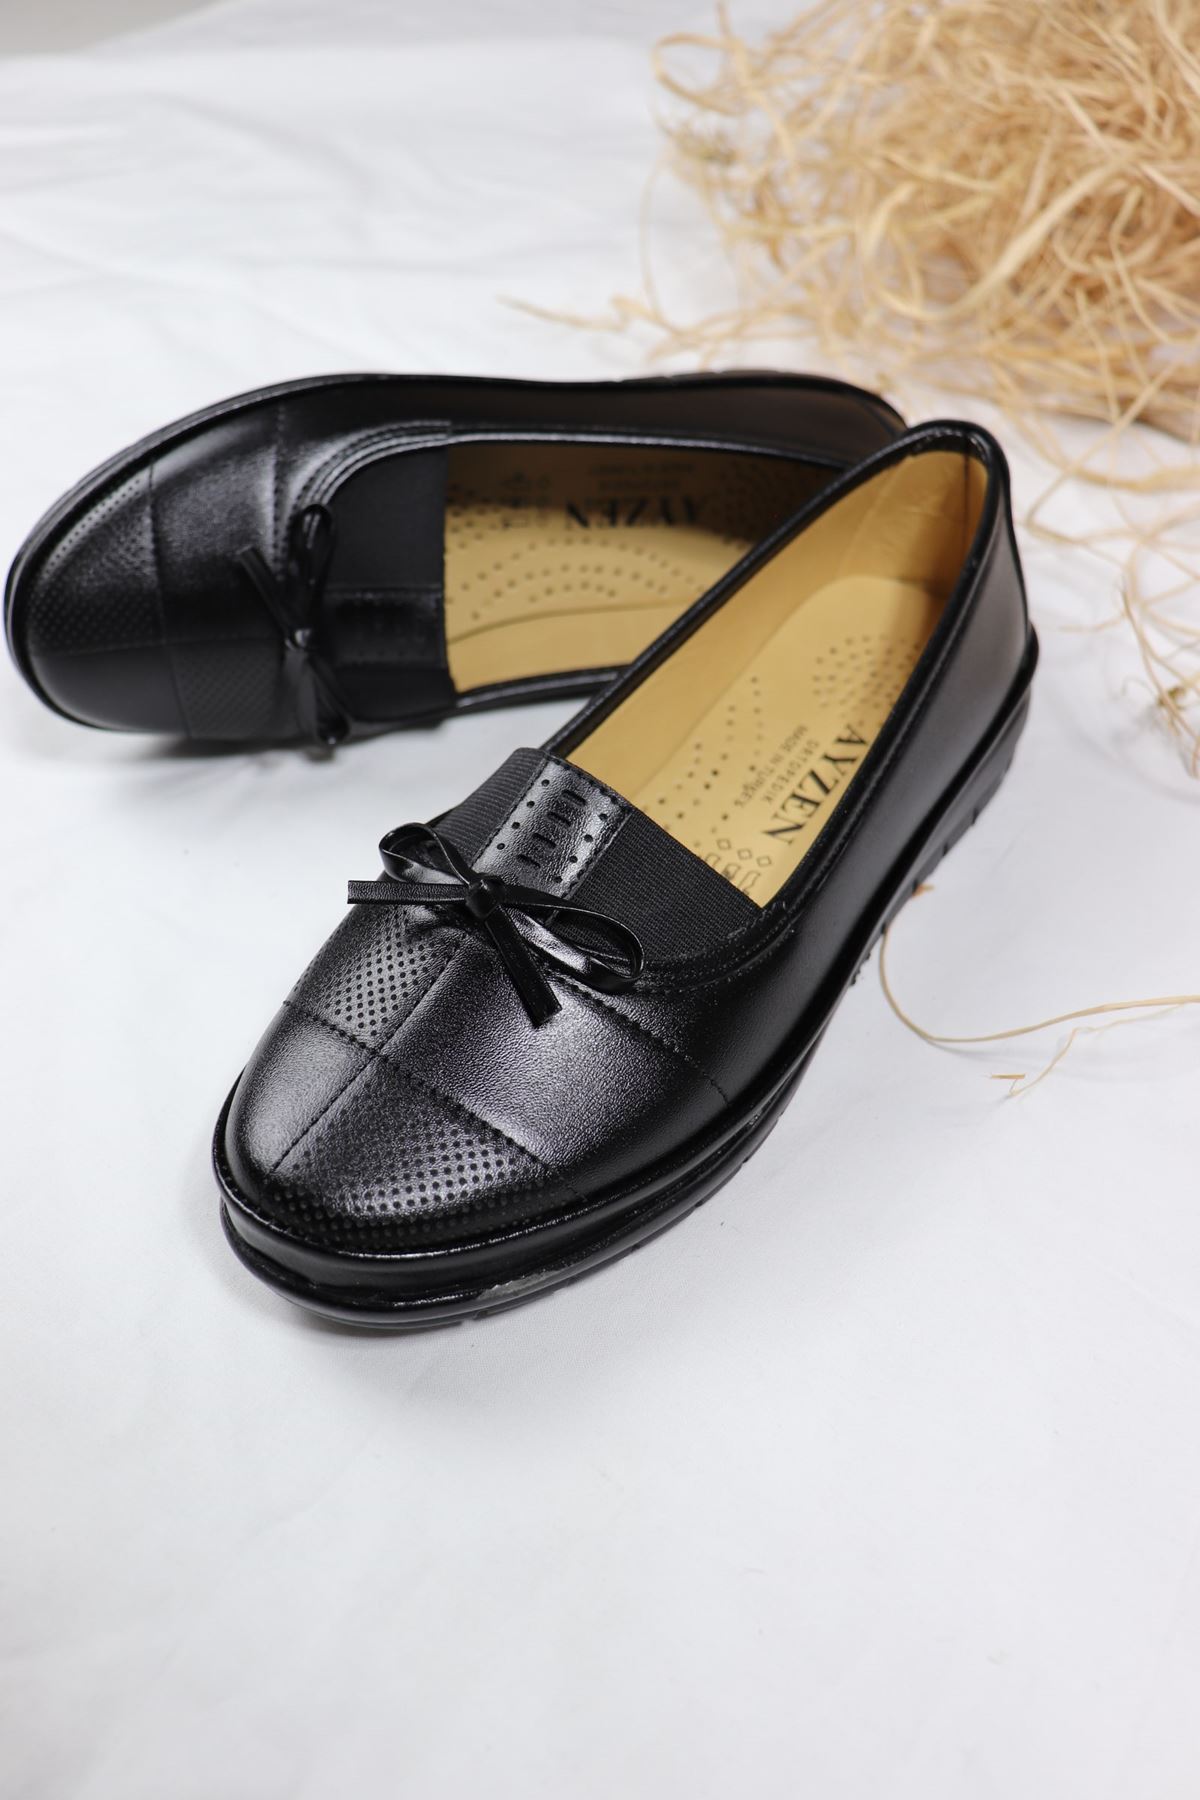 Trendayakkabı - Ortapedik Mat Siyah Ayakkabı 